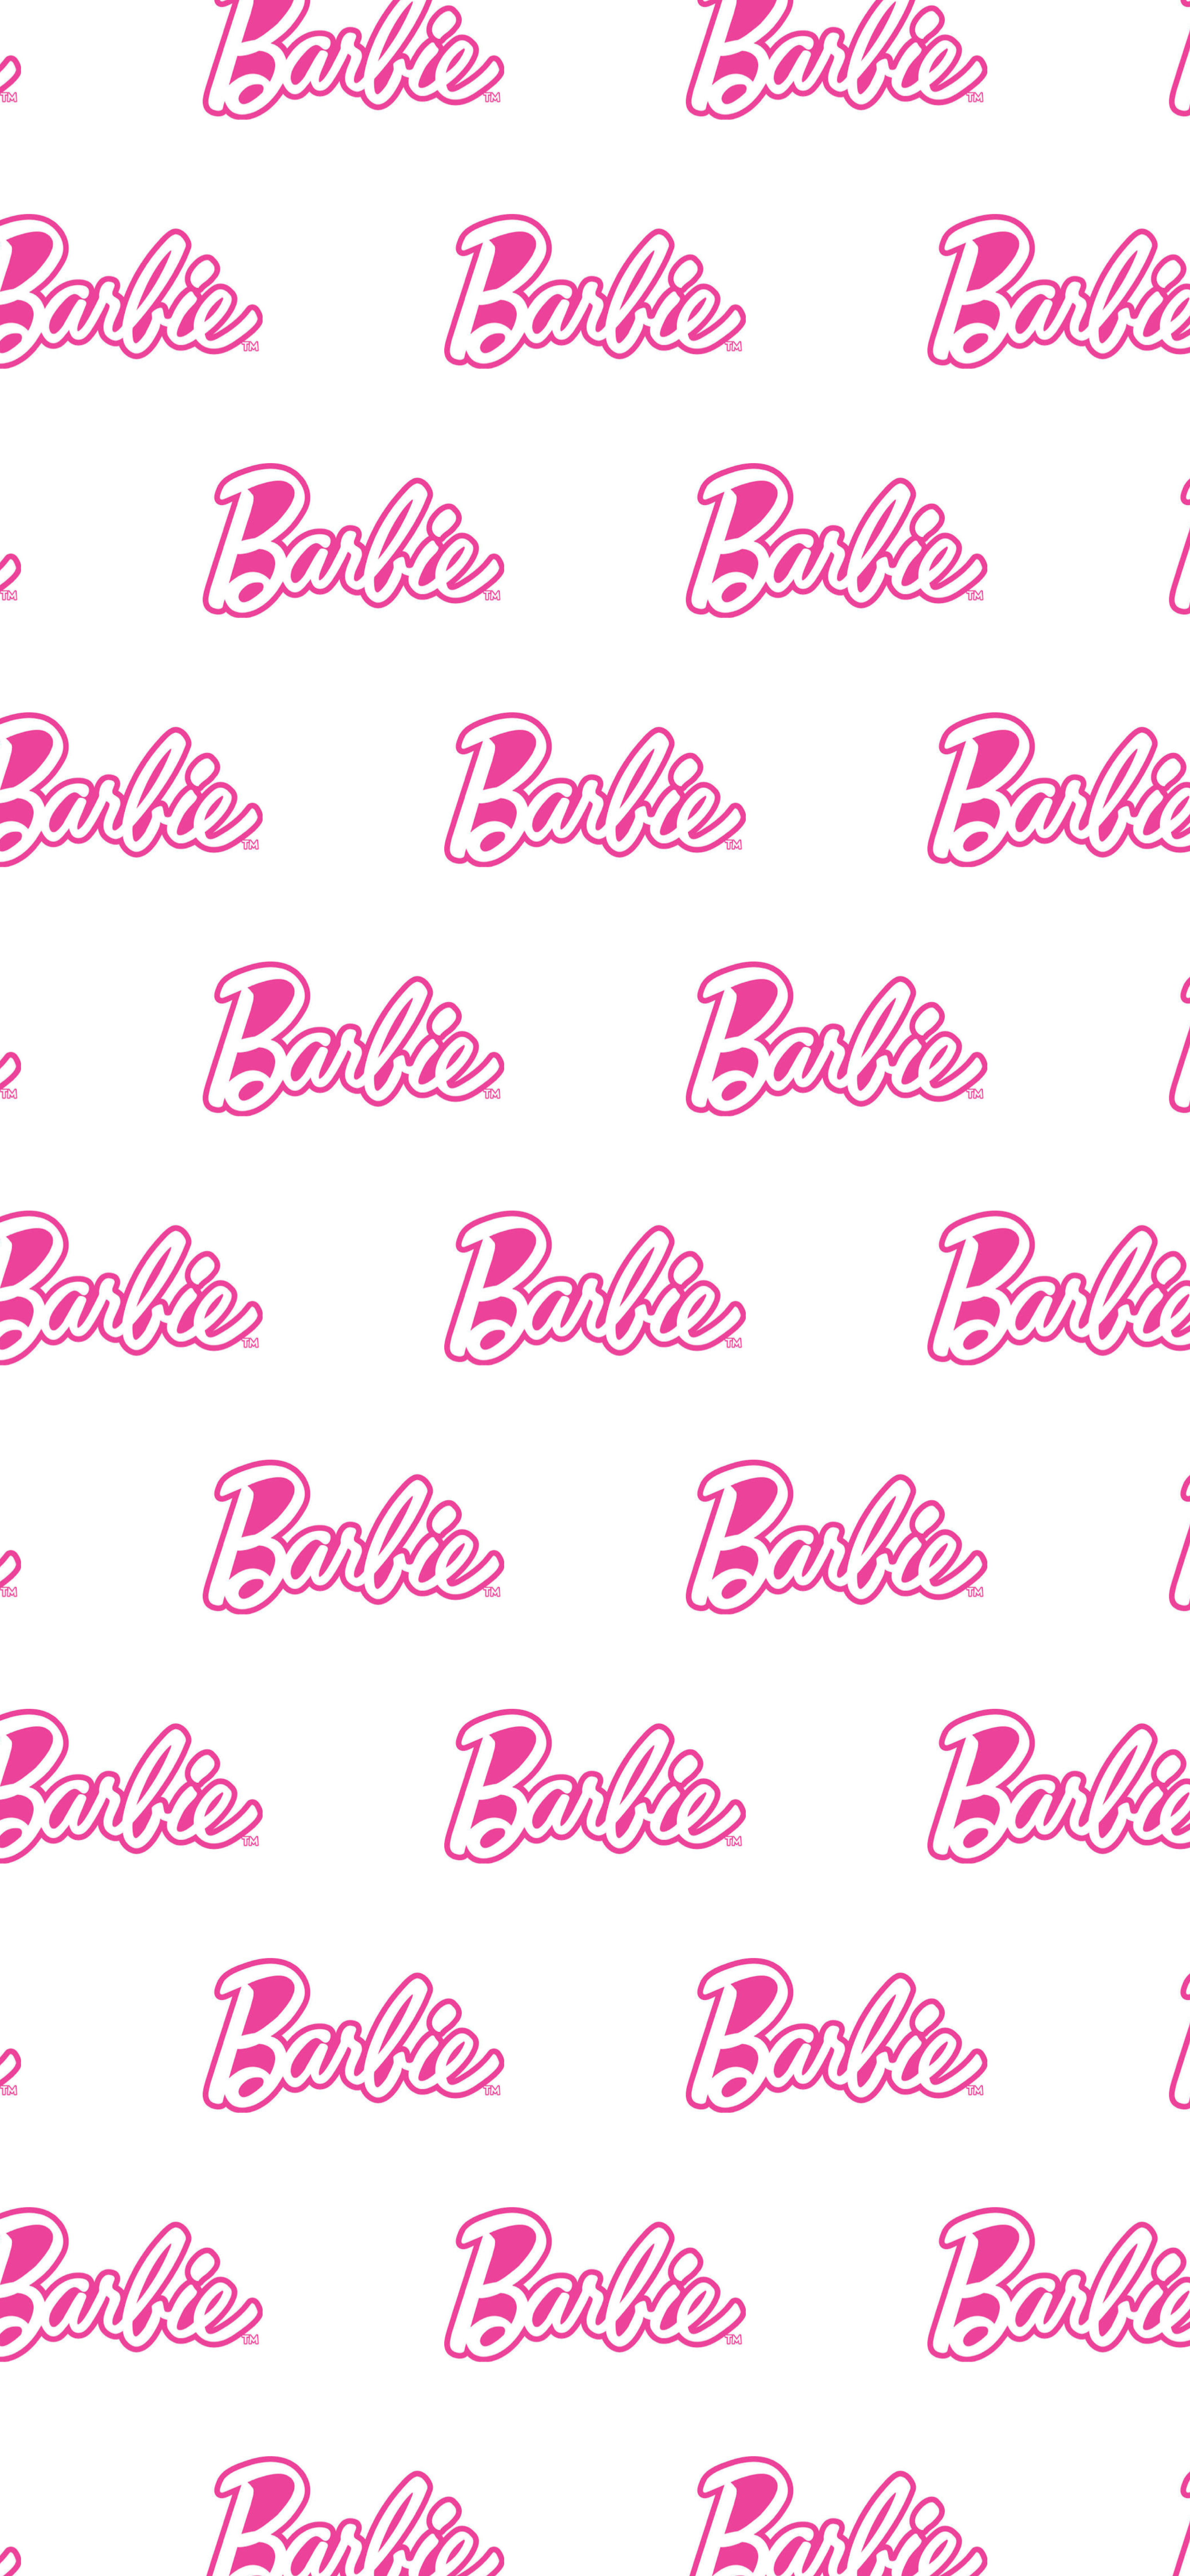 Barbie Wallpaper In 2019 iPhone Wallpaper Tumblr HD Wallpaper